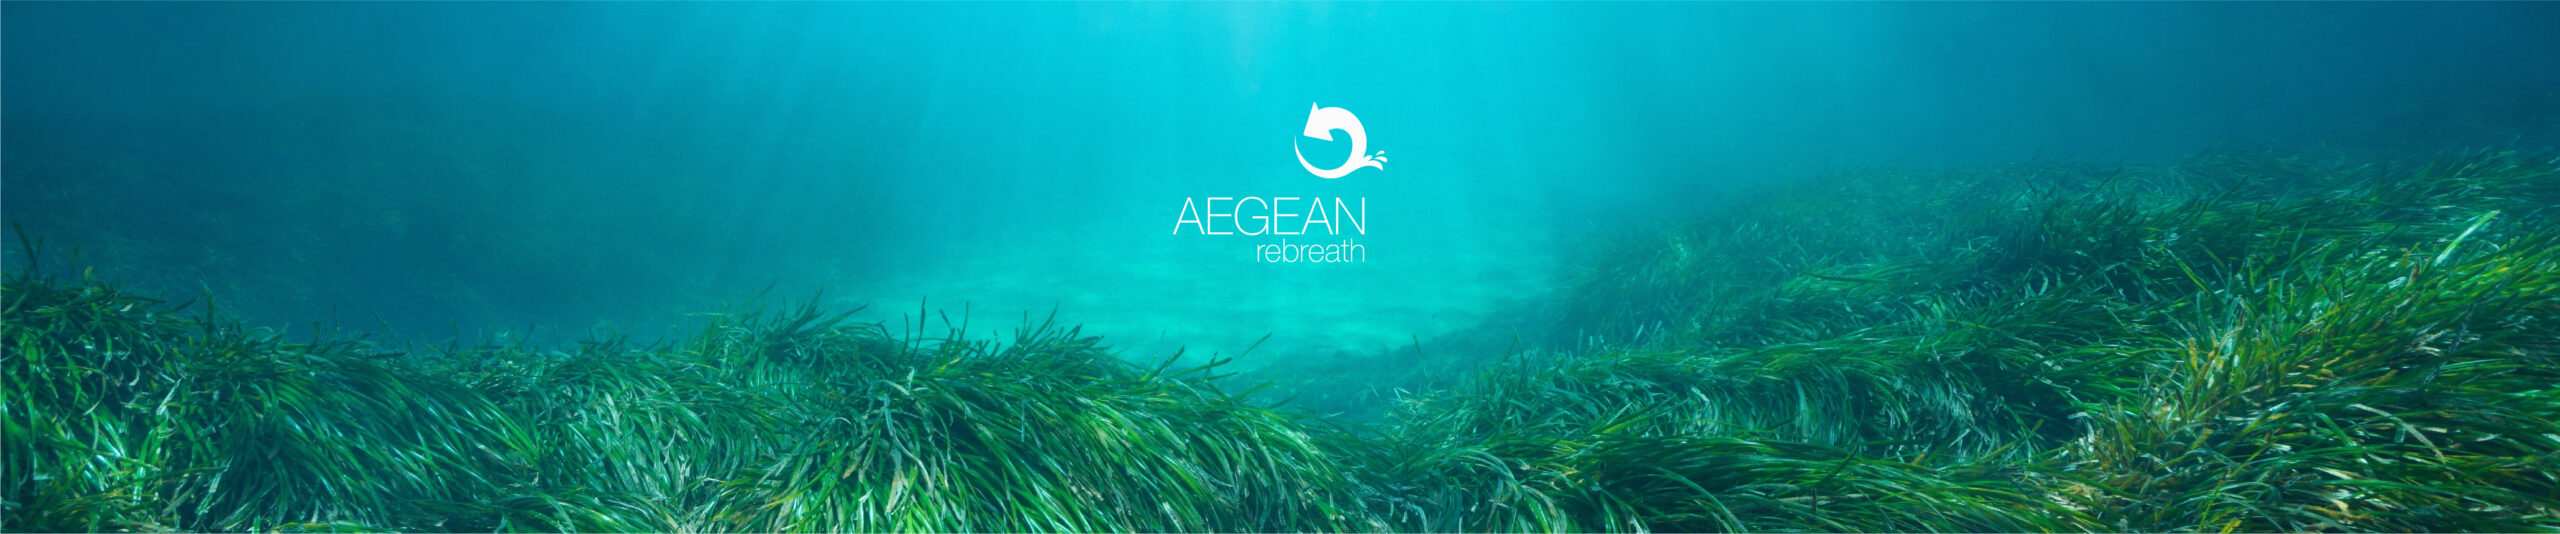 Aegean Rebeath Teleperformance